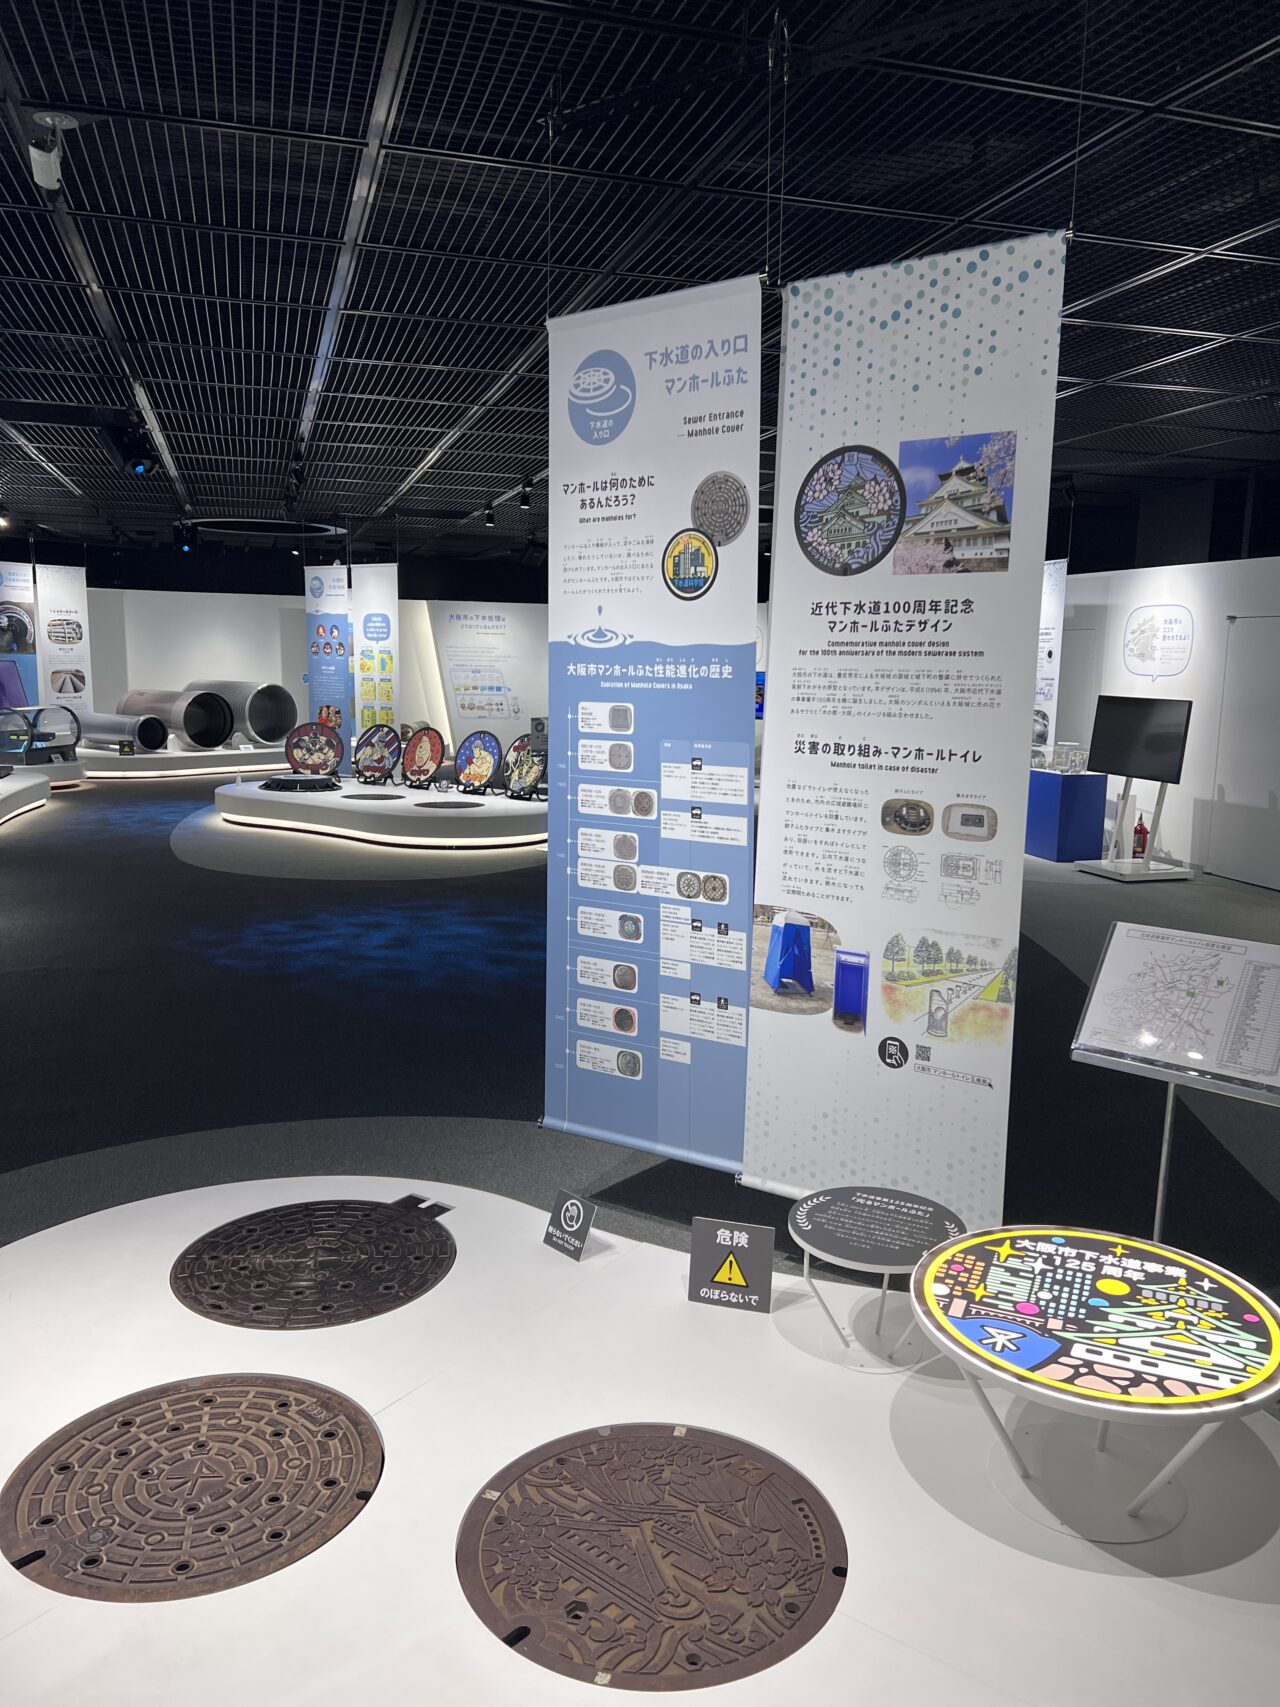 大阪市下水道科学館の地下1嘉、下水道を支える技術